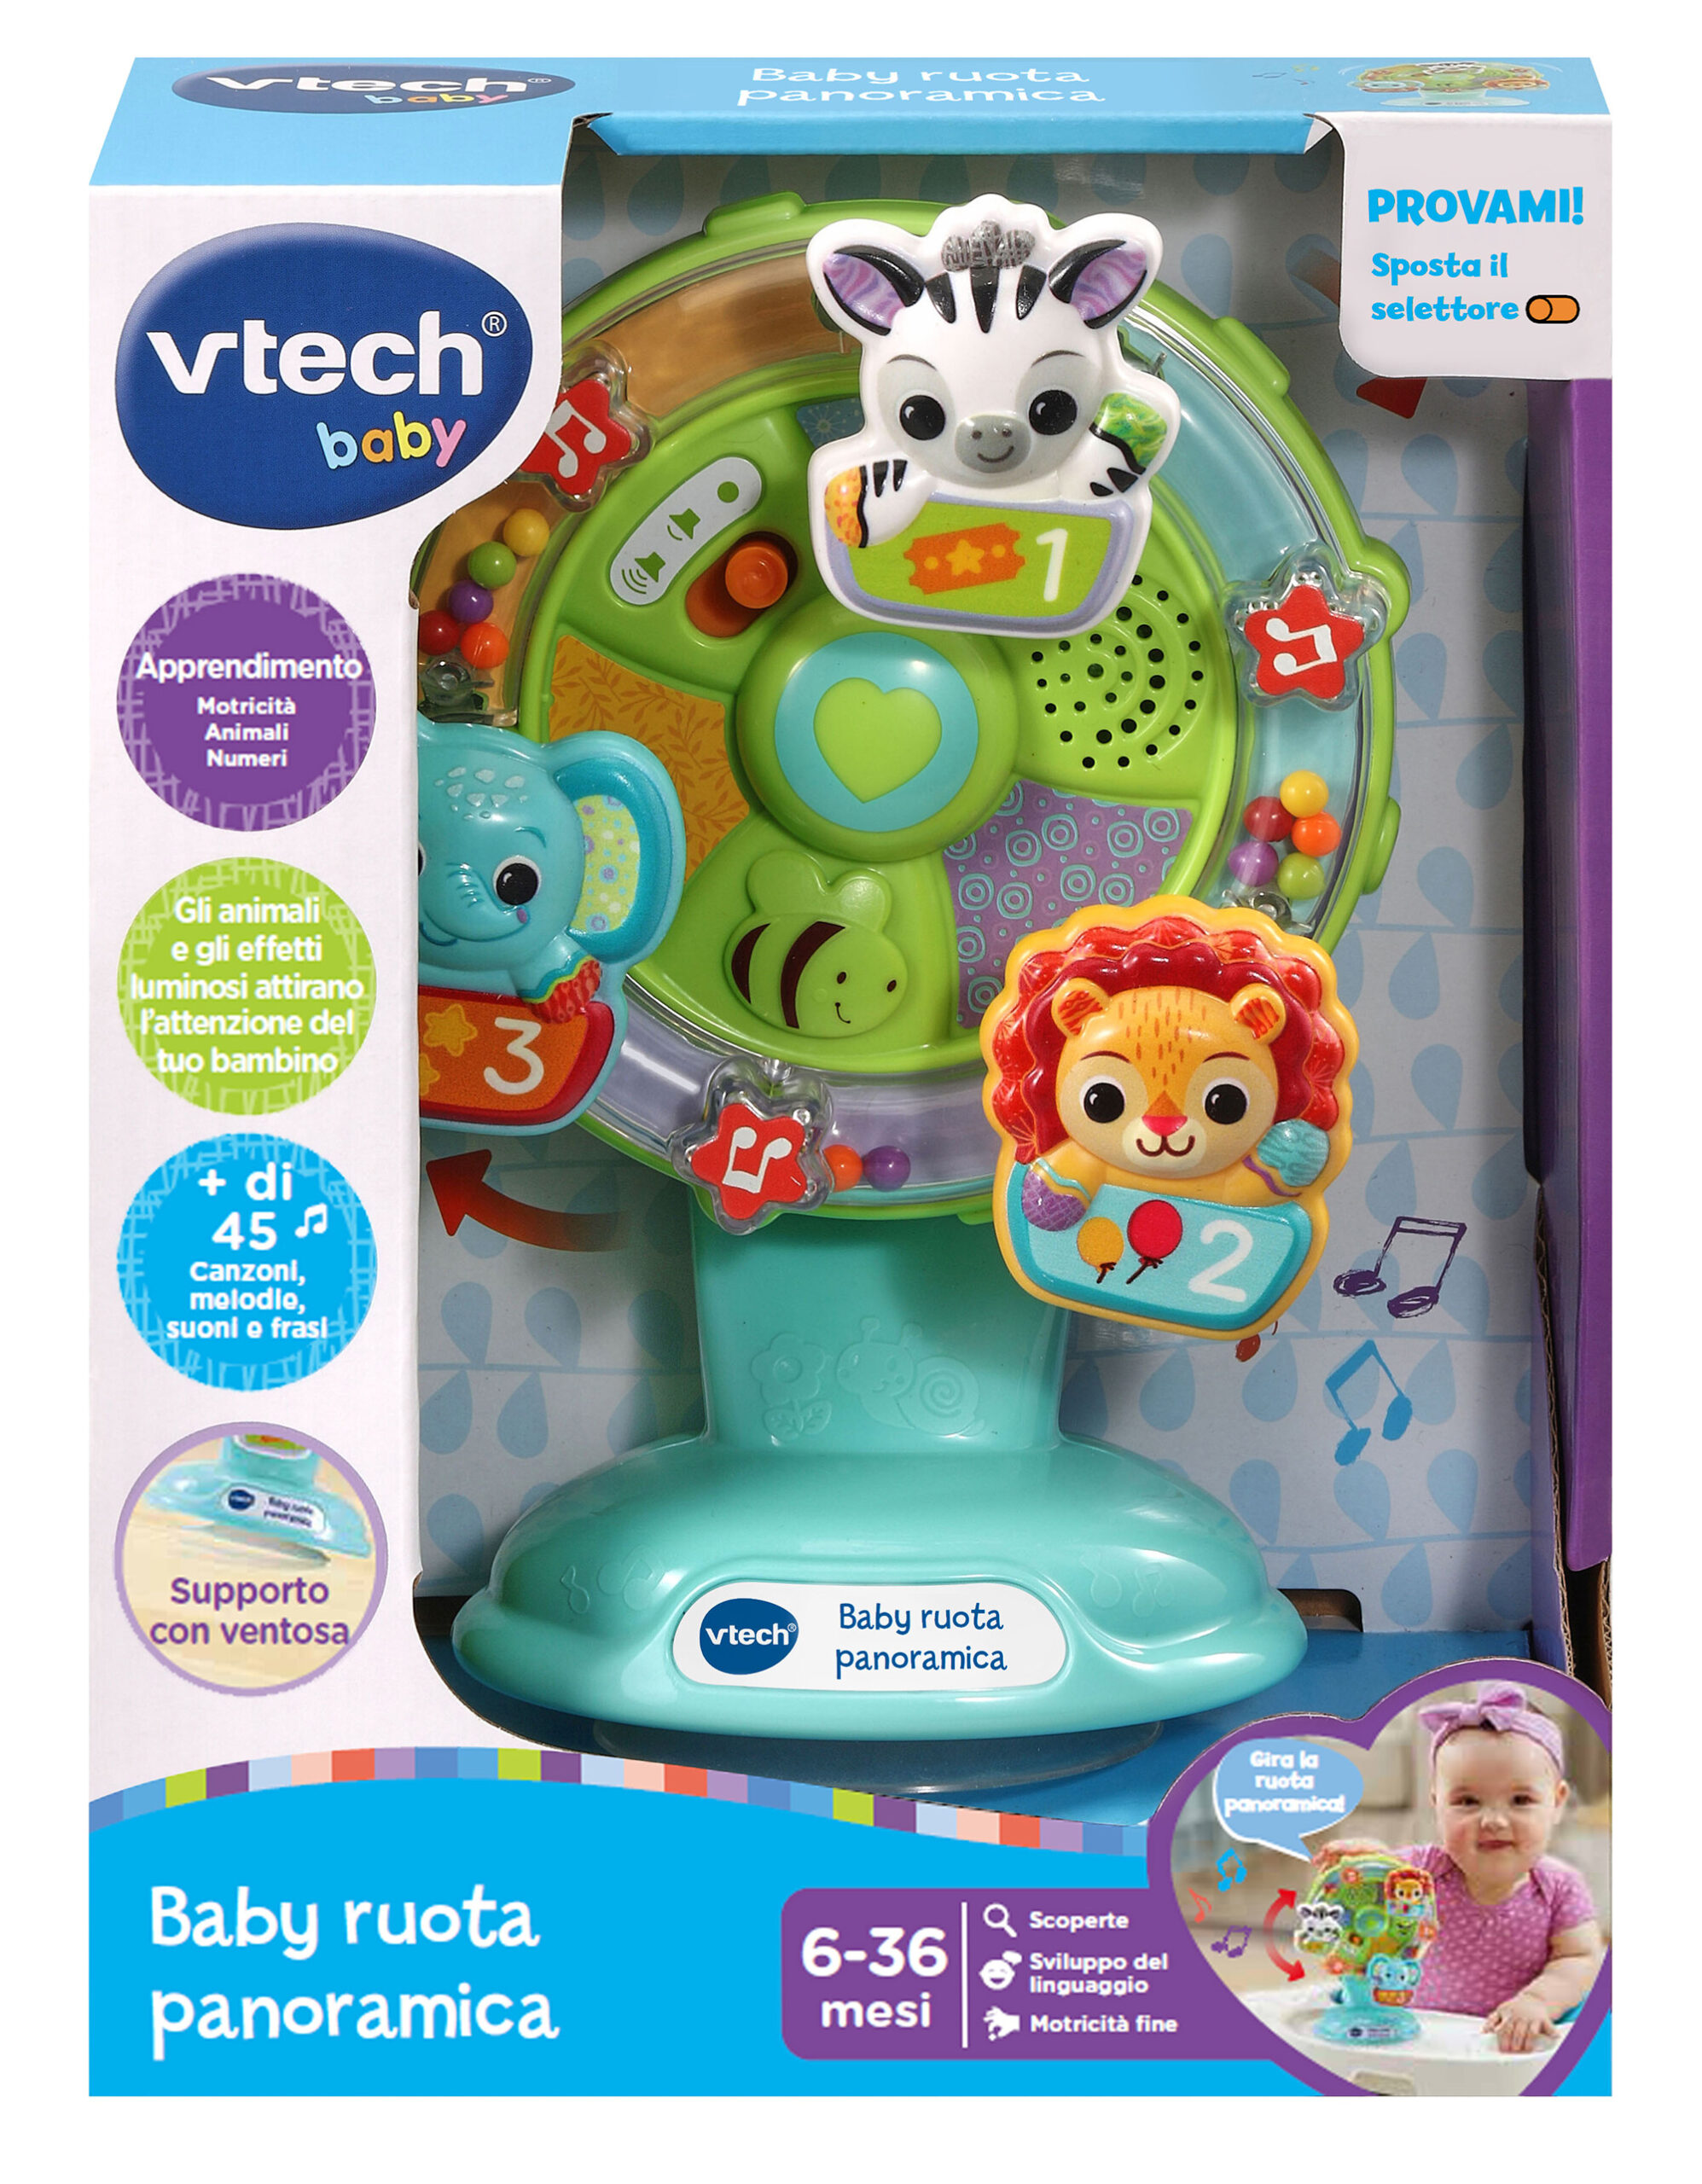 Vtech - baby ruota panoramica, una ruota panoramica interattiva per imparare girando e divertendosi! - VTECH